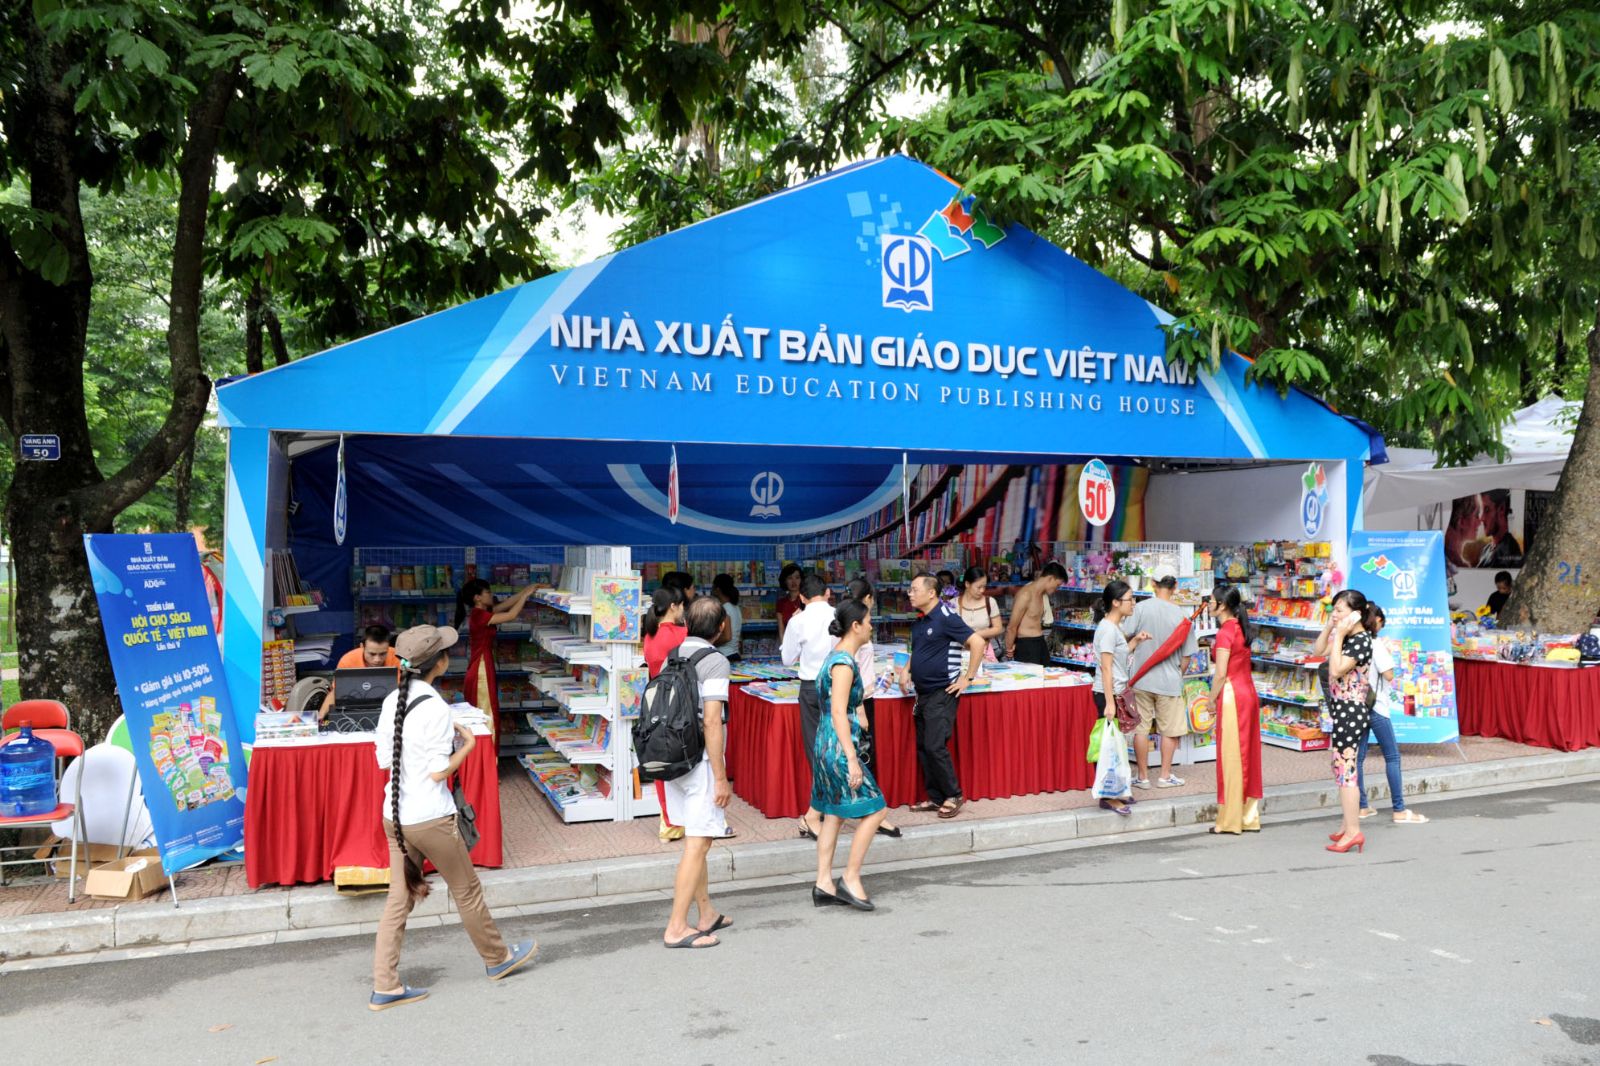 Nhà xuất bản Giáo dục Việt Nam tham gia Triển lãm - Hội chợ Sách quốc tế Việt Nam lần thứ V